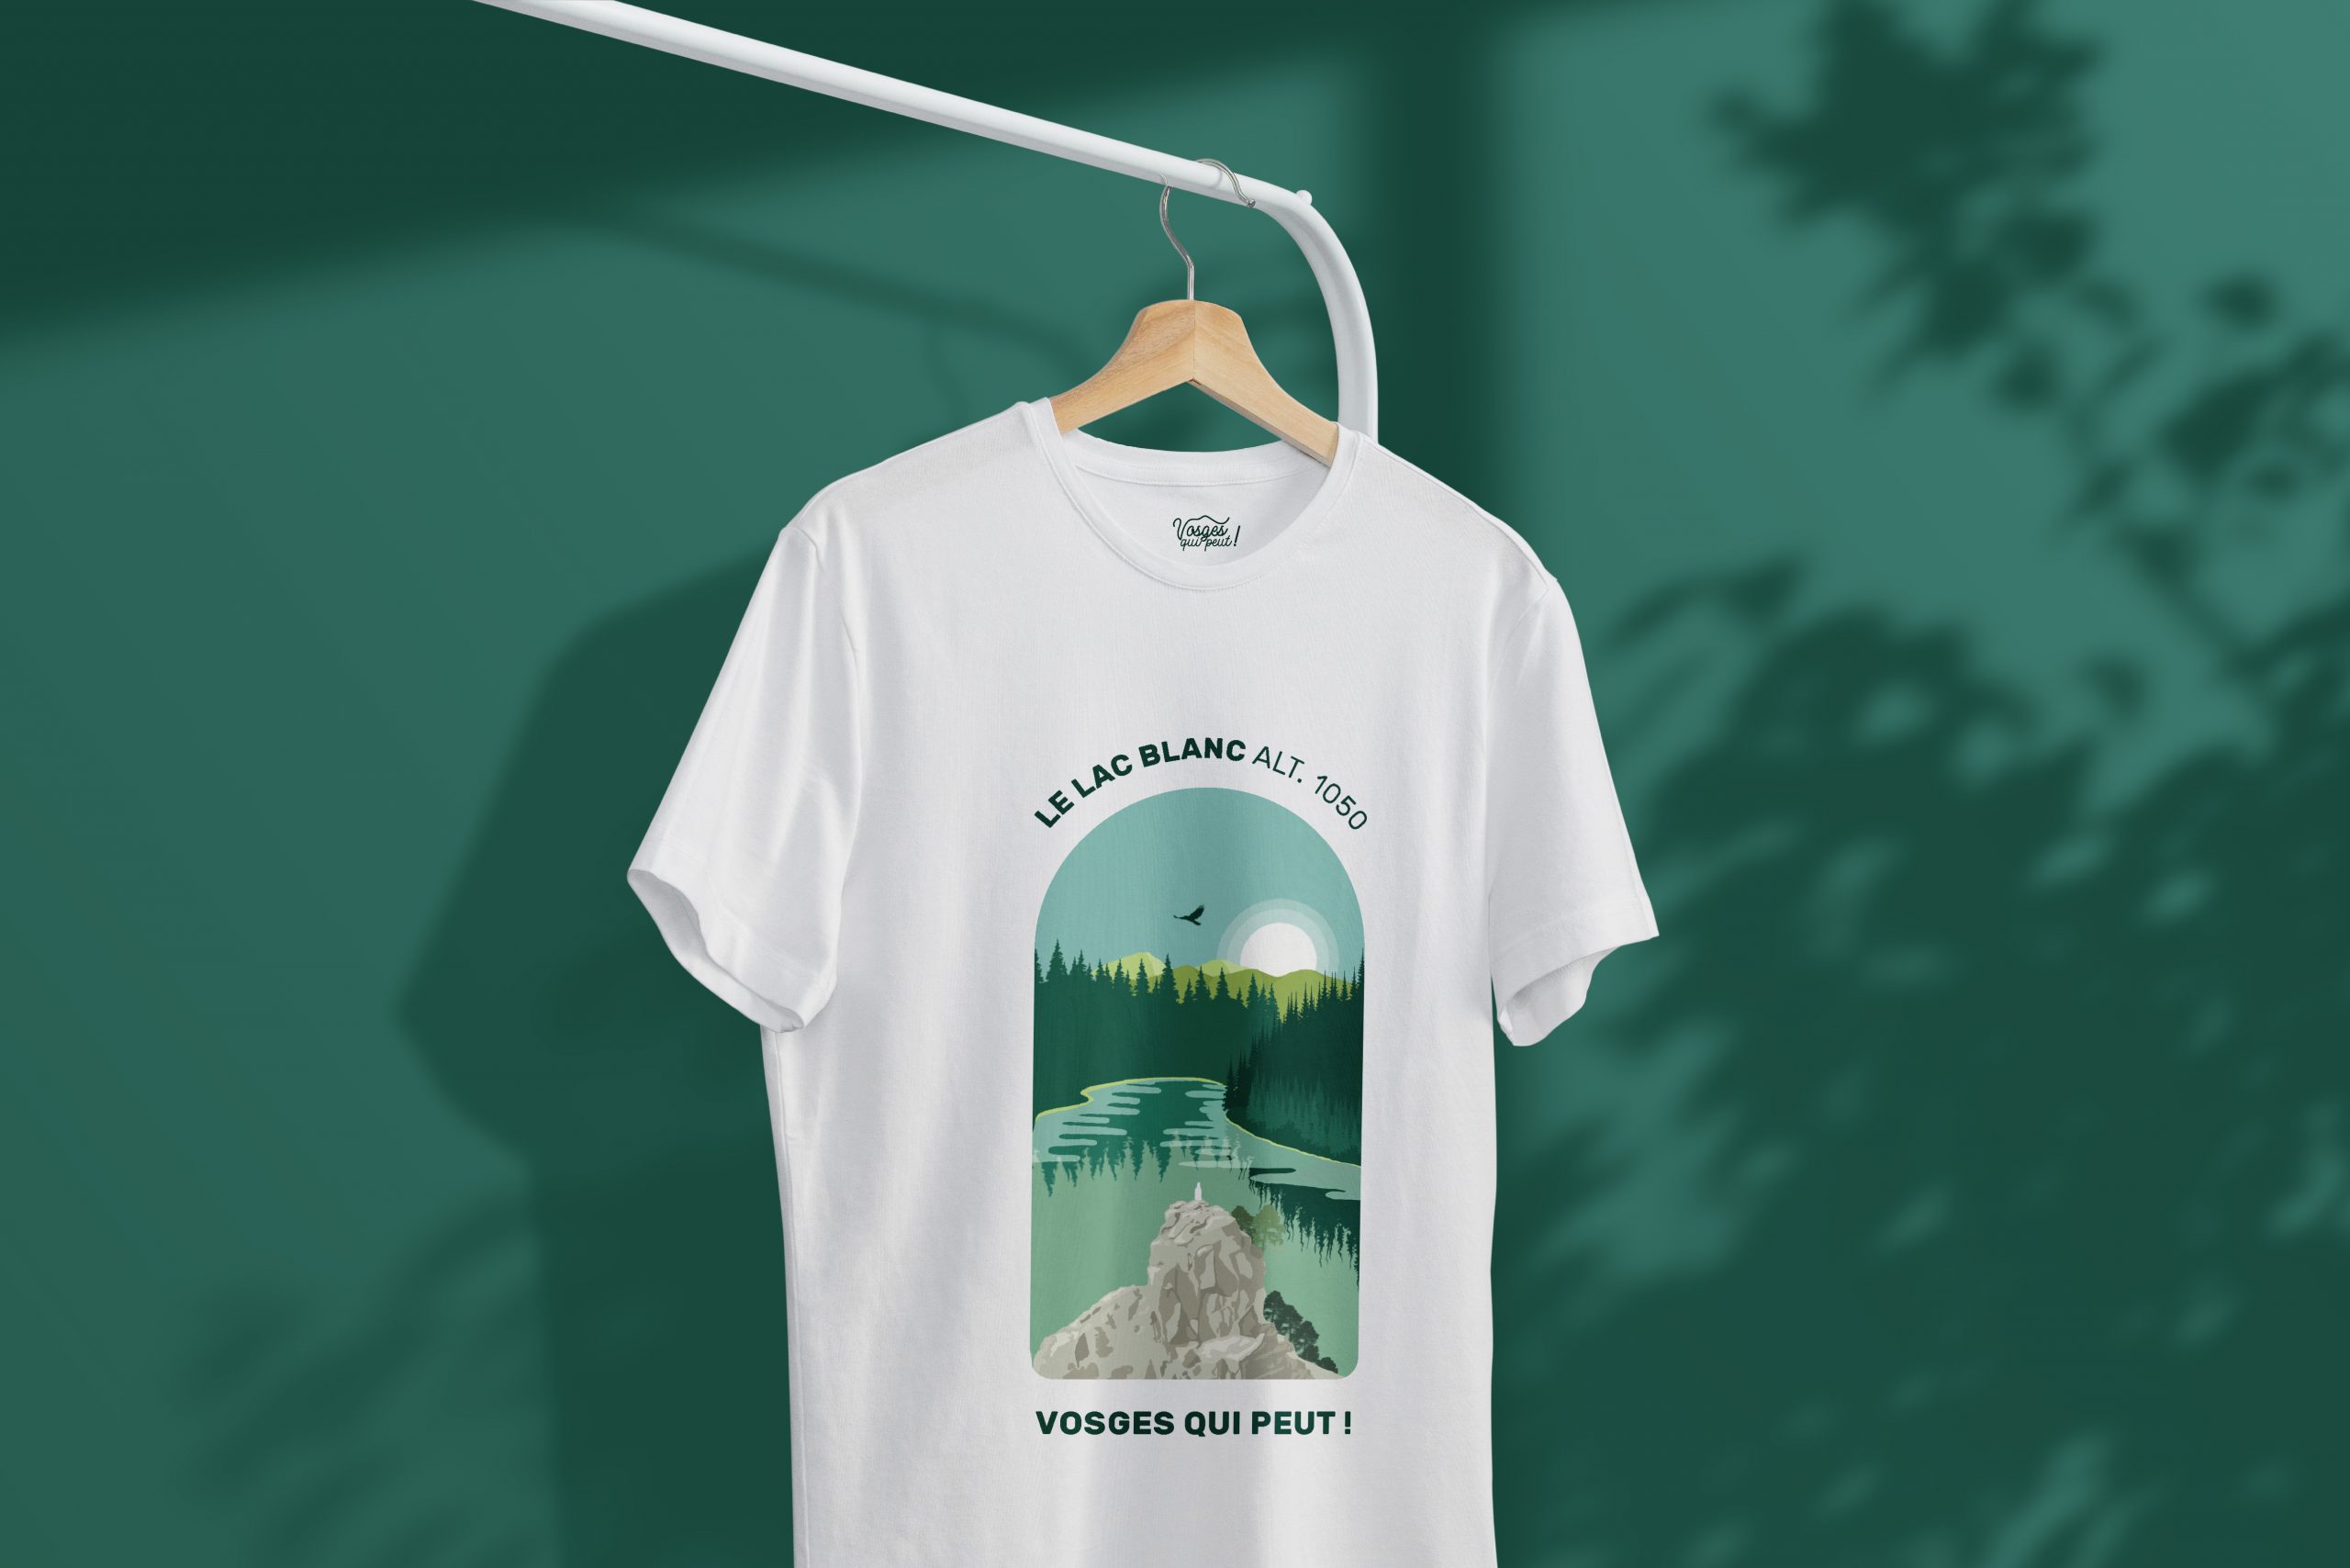 Découvrez le premier t-shirt « Vosges qui peut ! » !